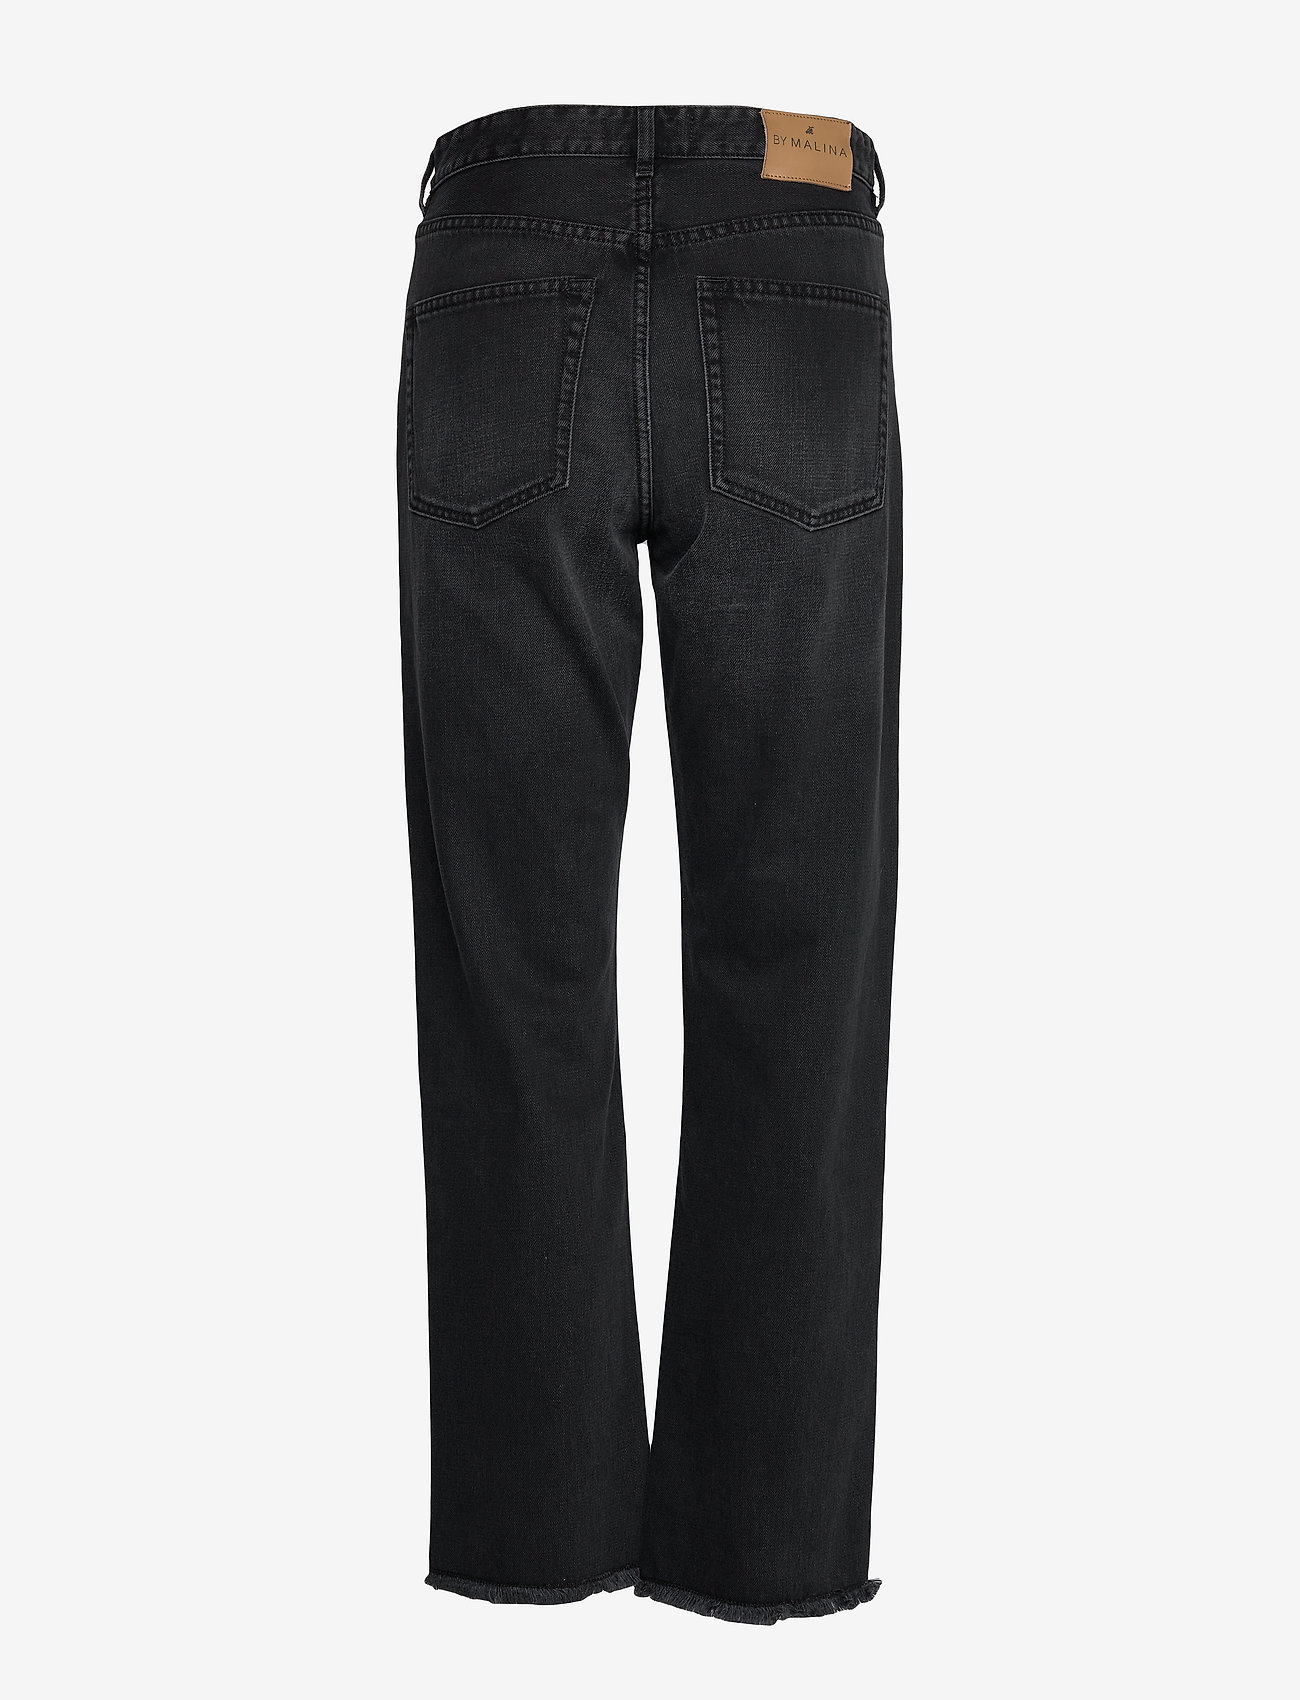 Malina - Alexa high-rise denim jeans - džinsi - black - 1